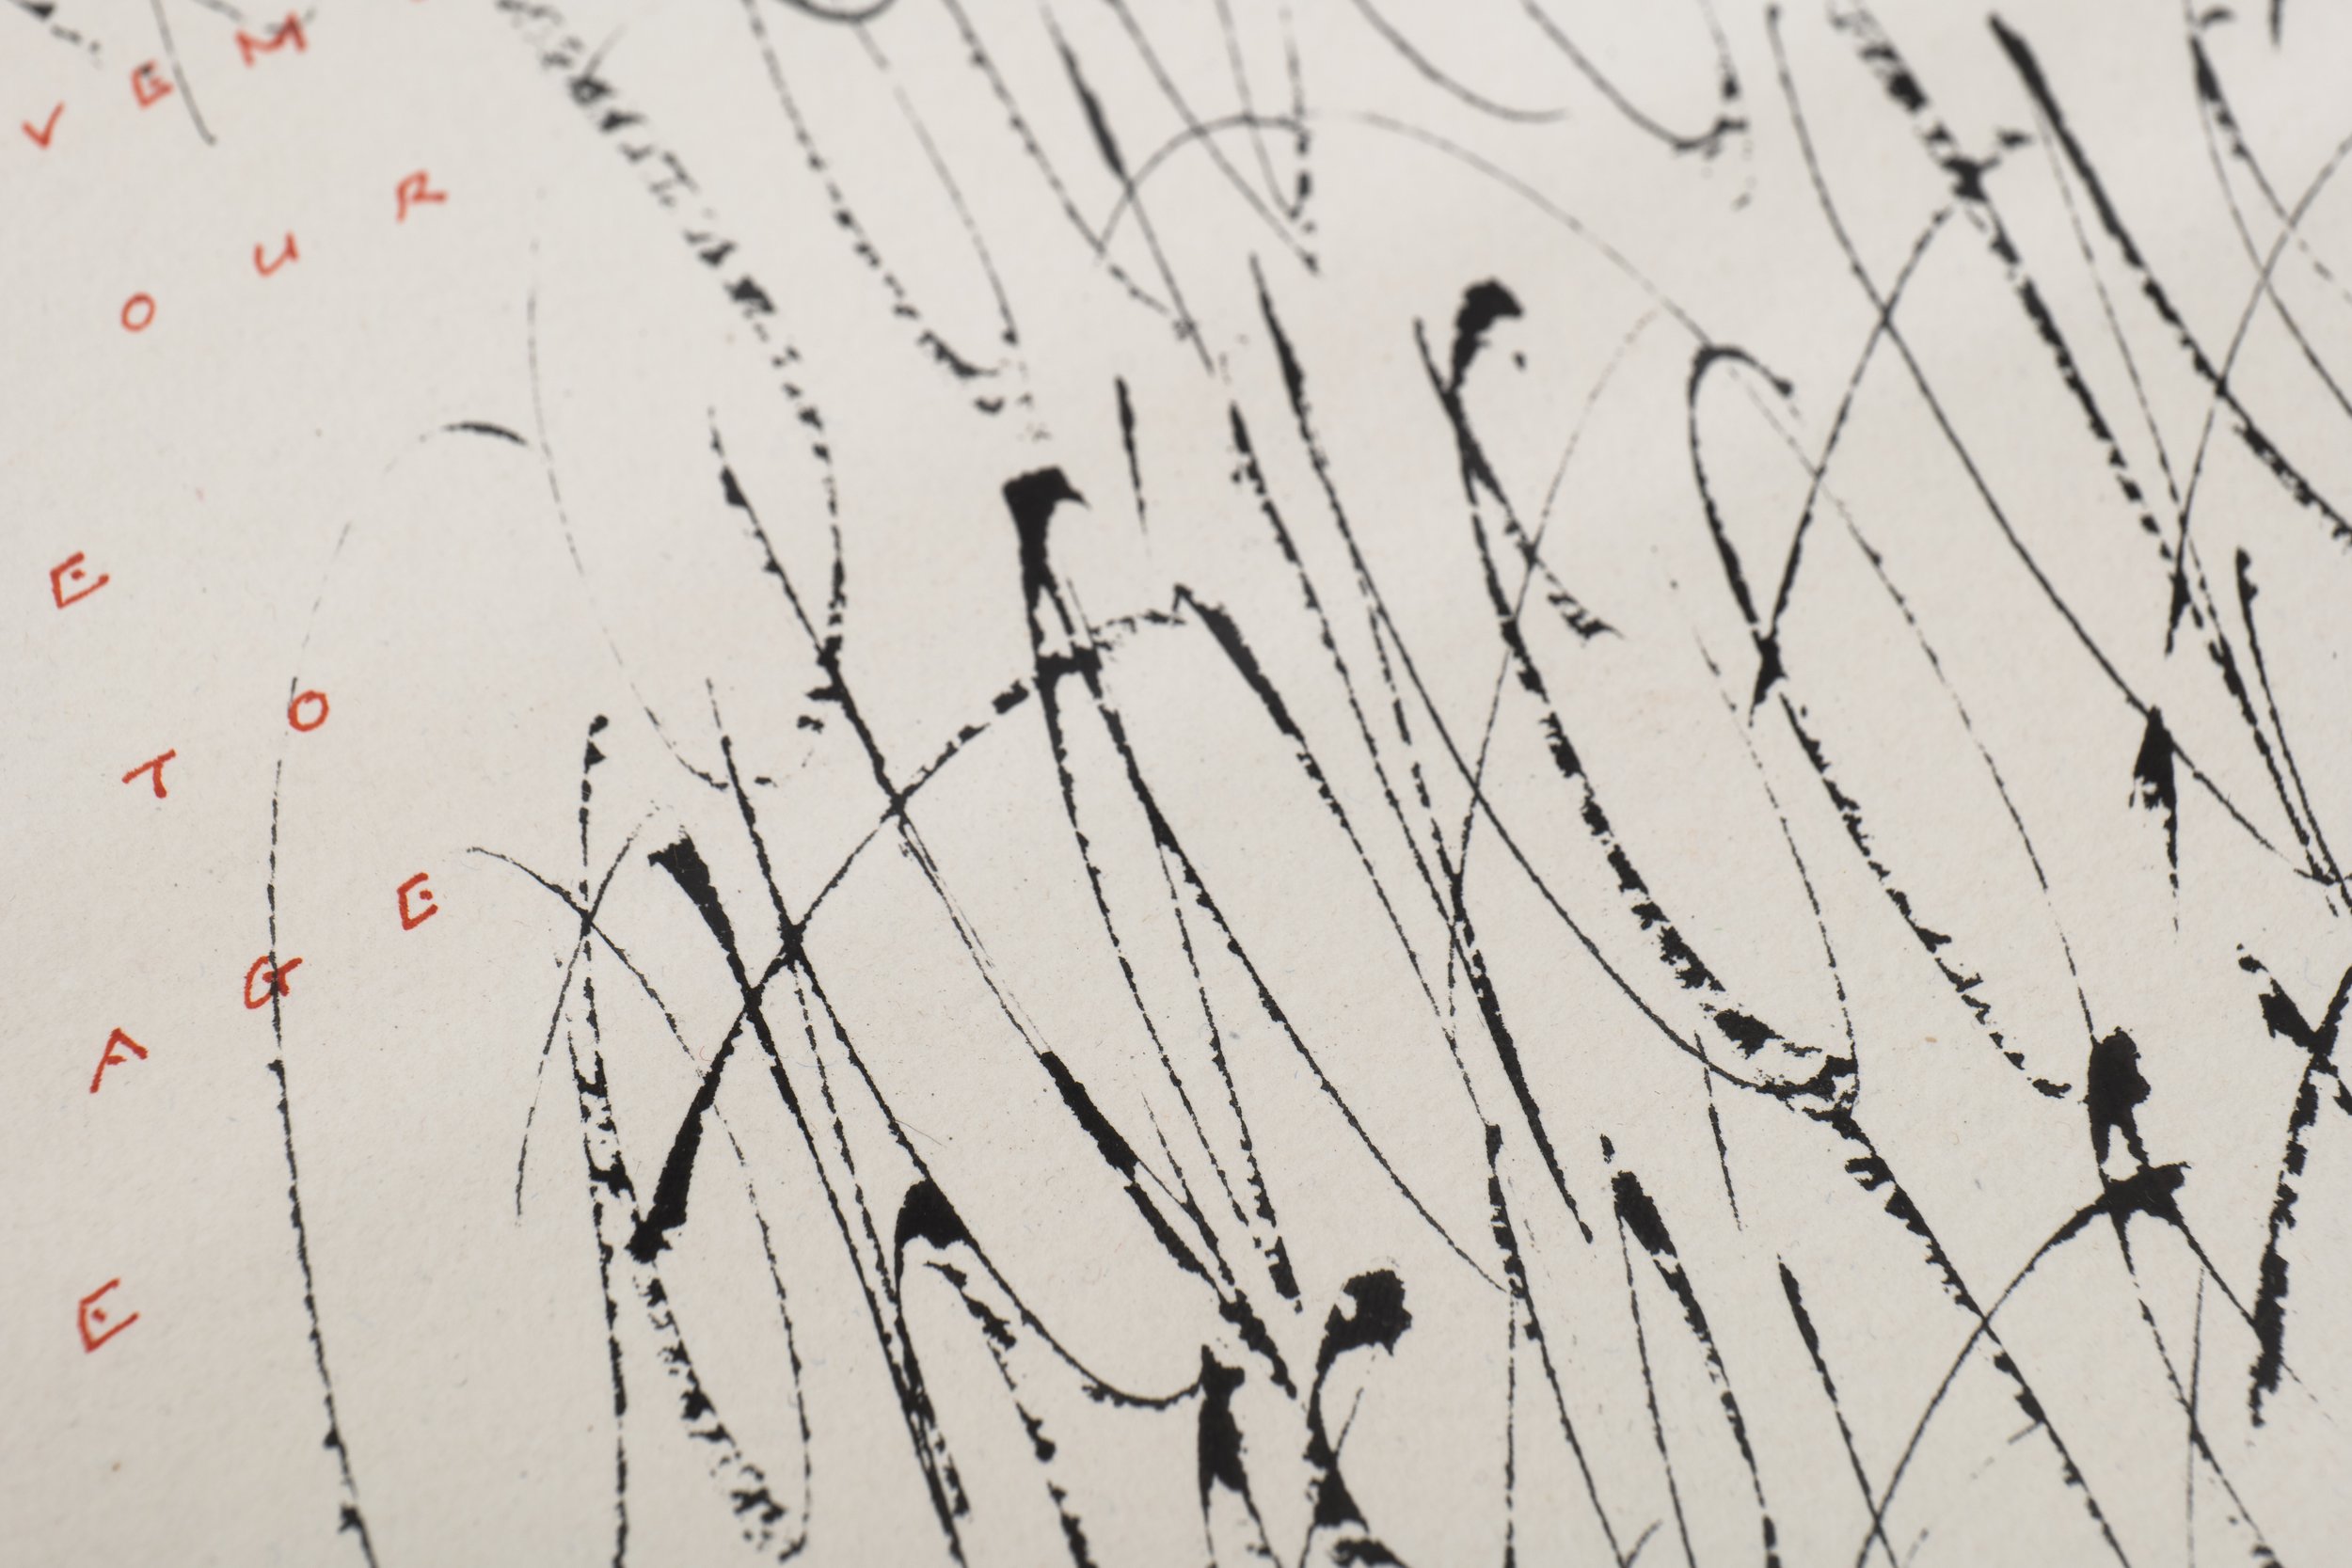 calligraphy-artwork-dao-huy-hoang-31.jpg